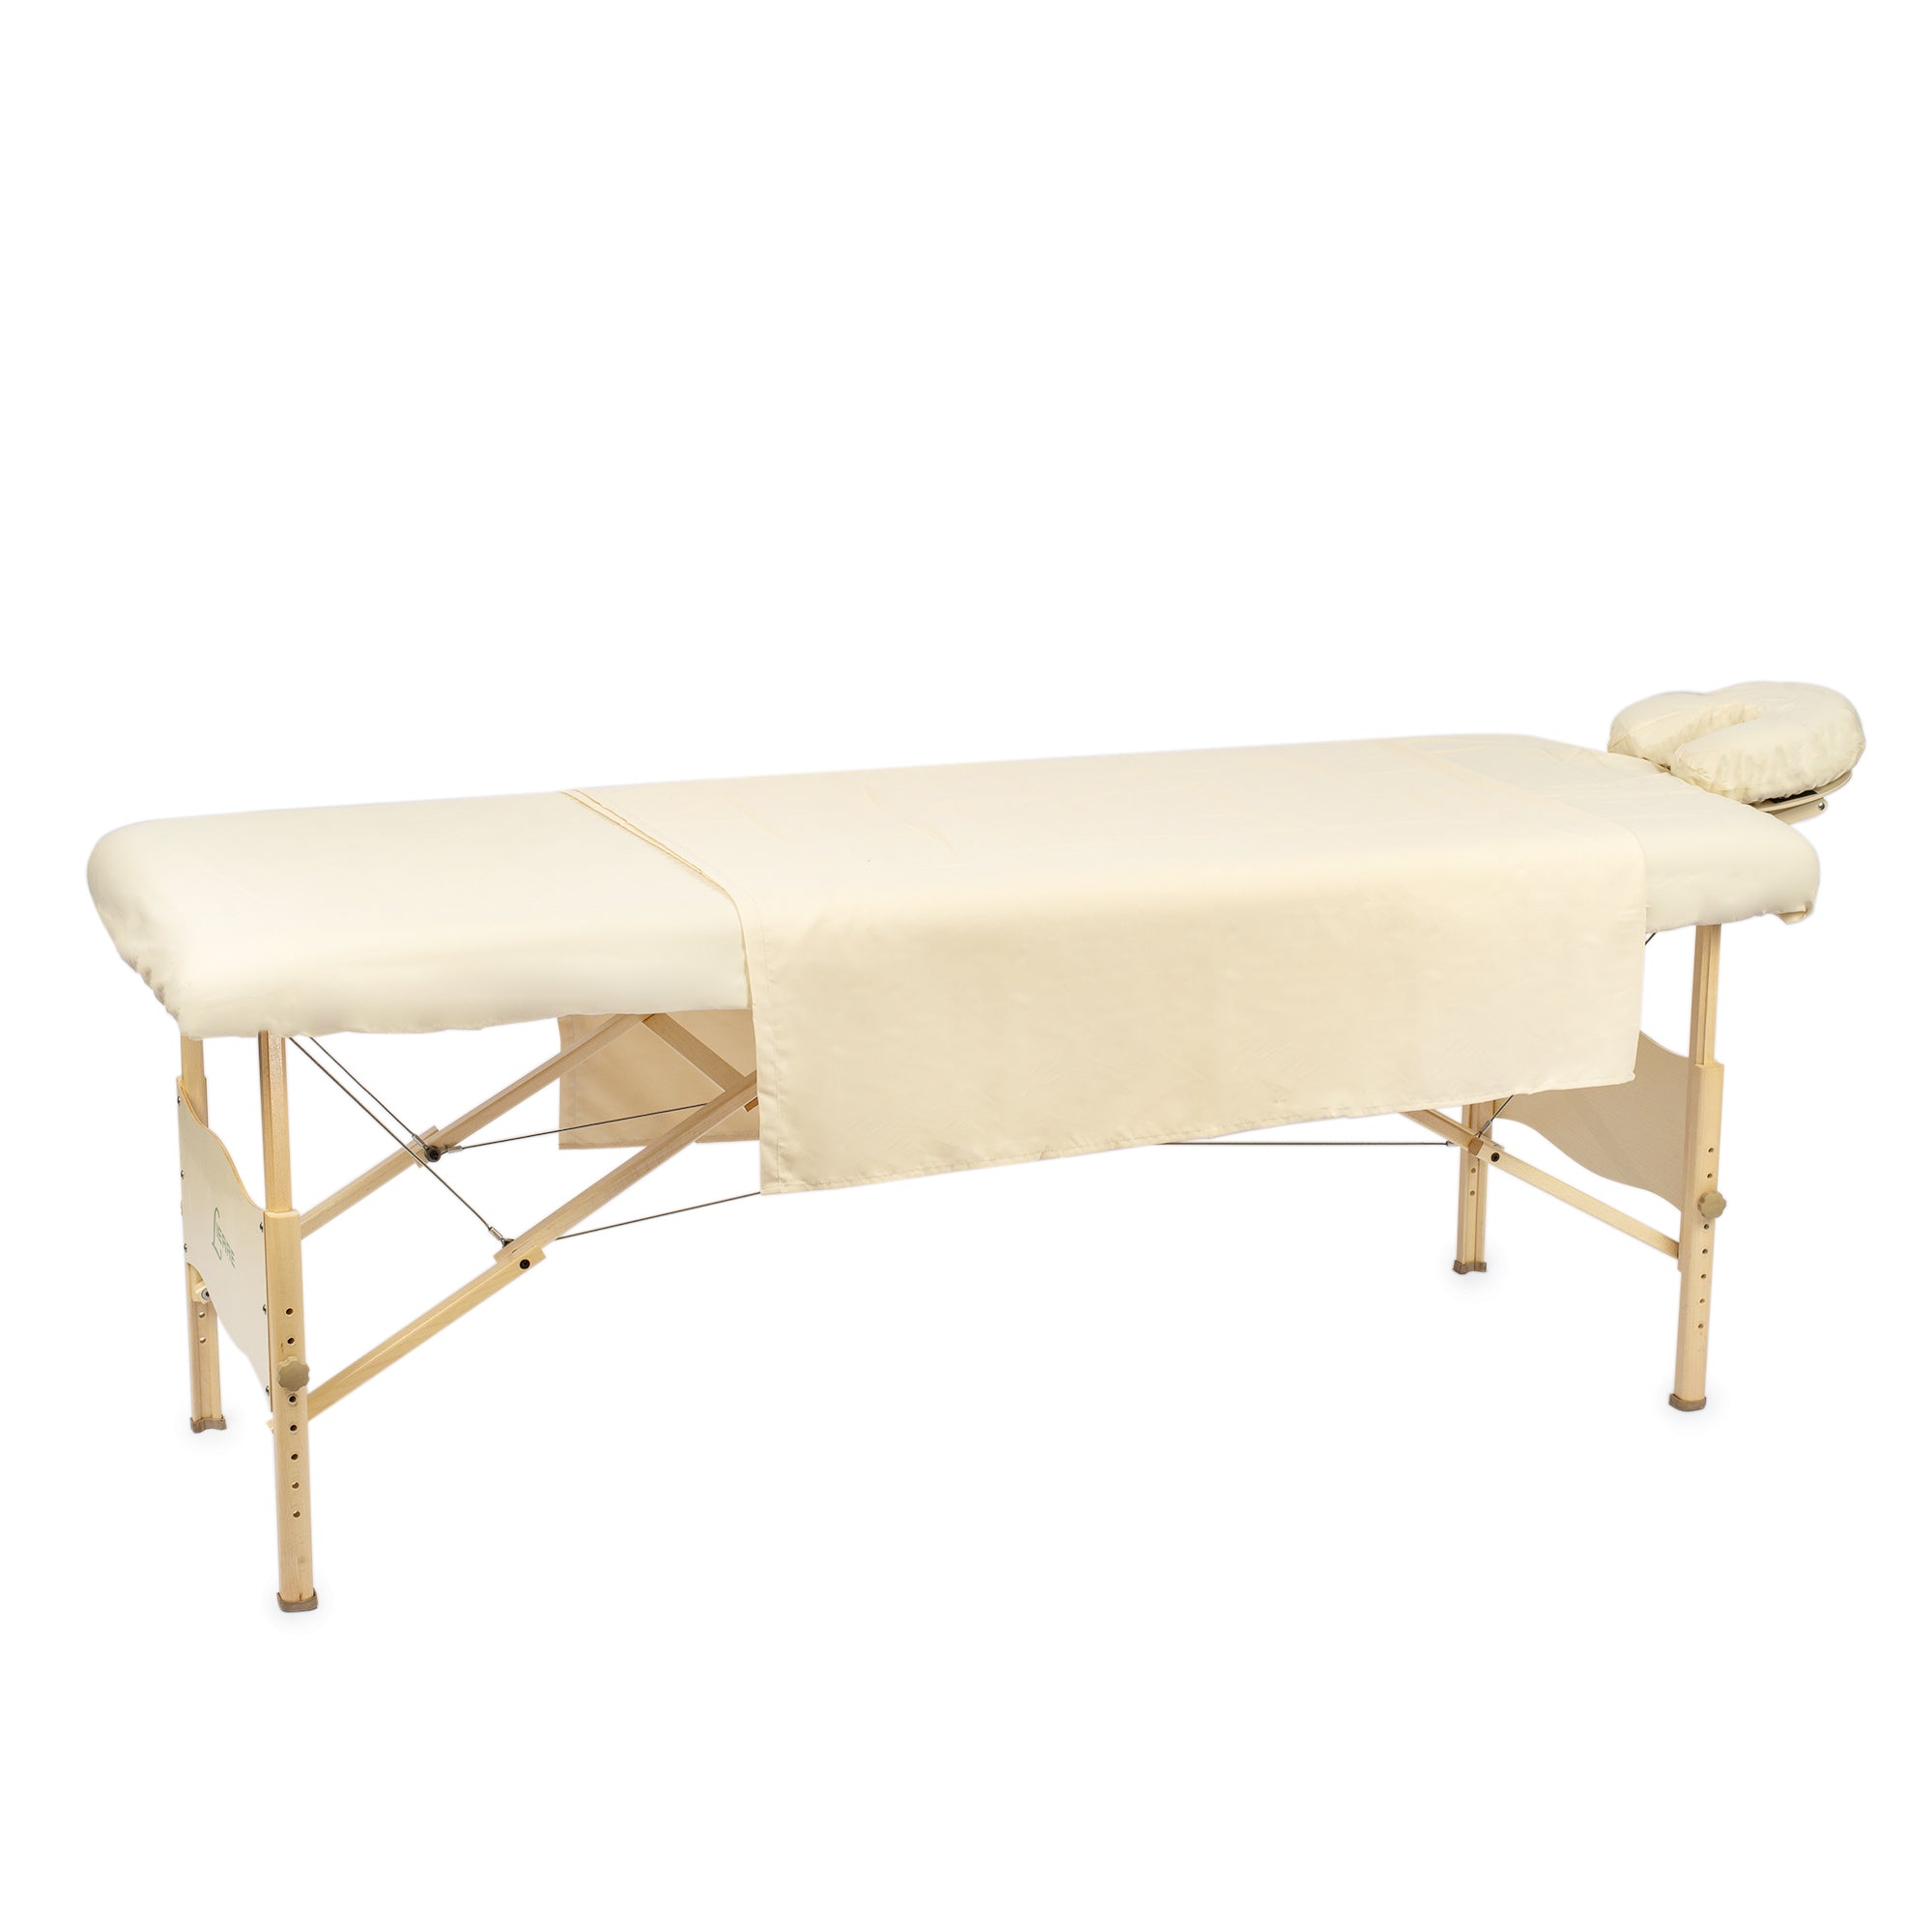 Set de draps pour table de massage - Flanelle - Blanc